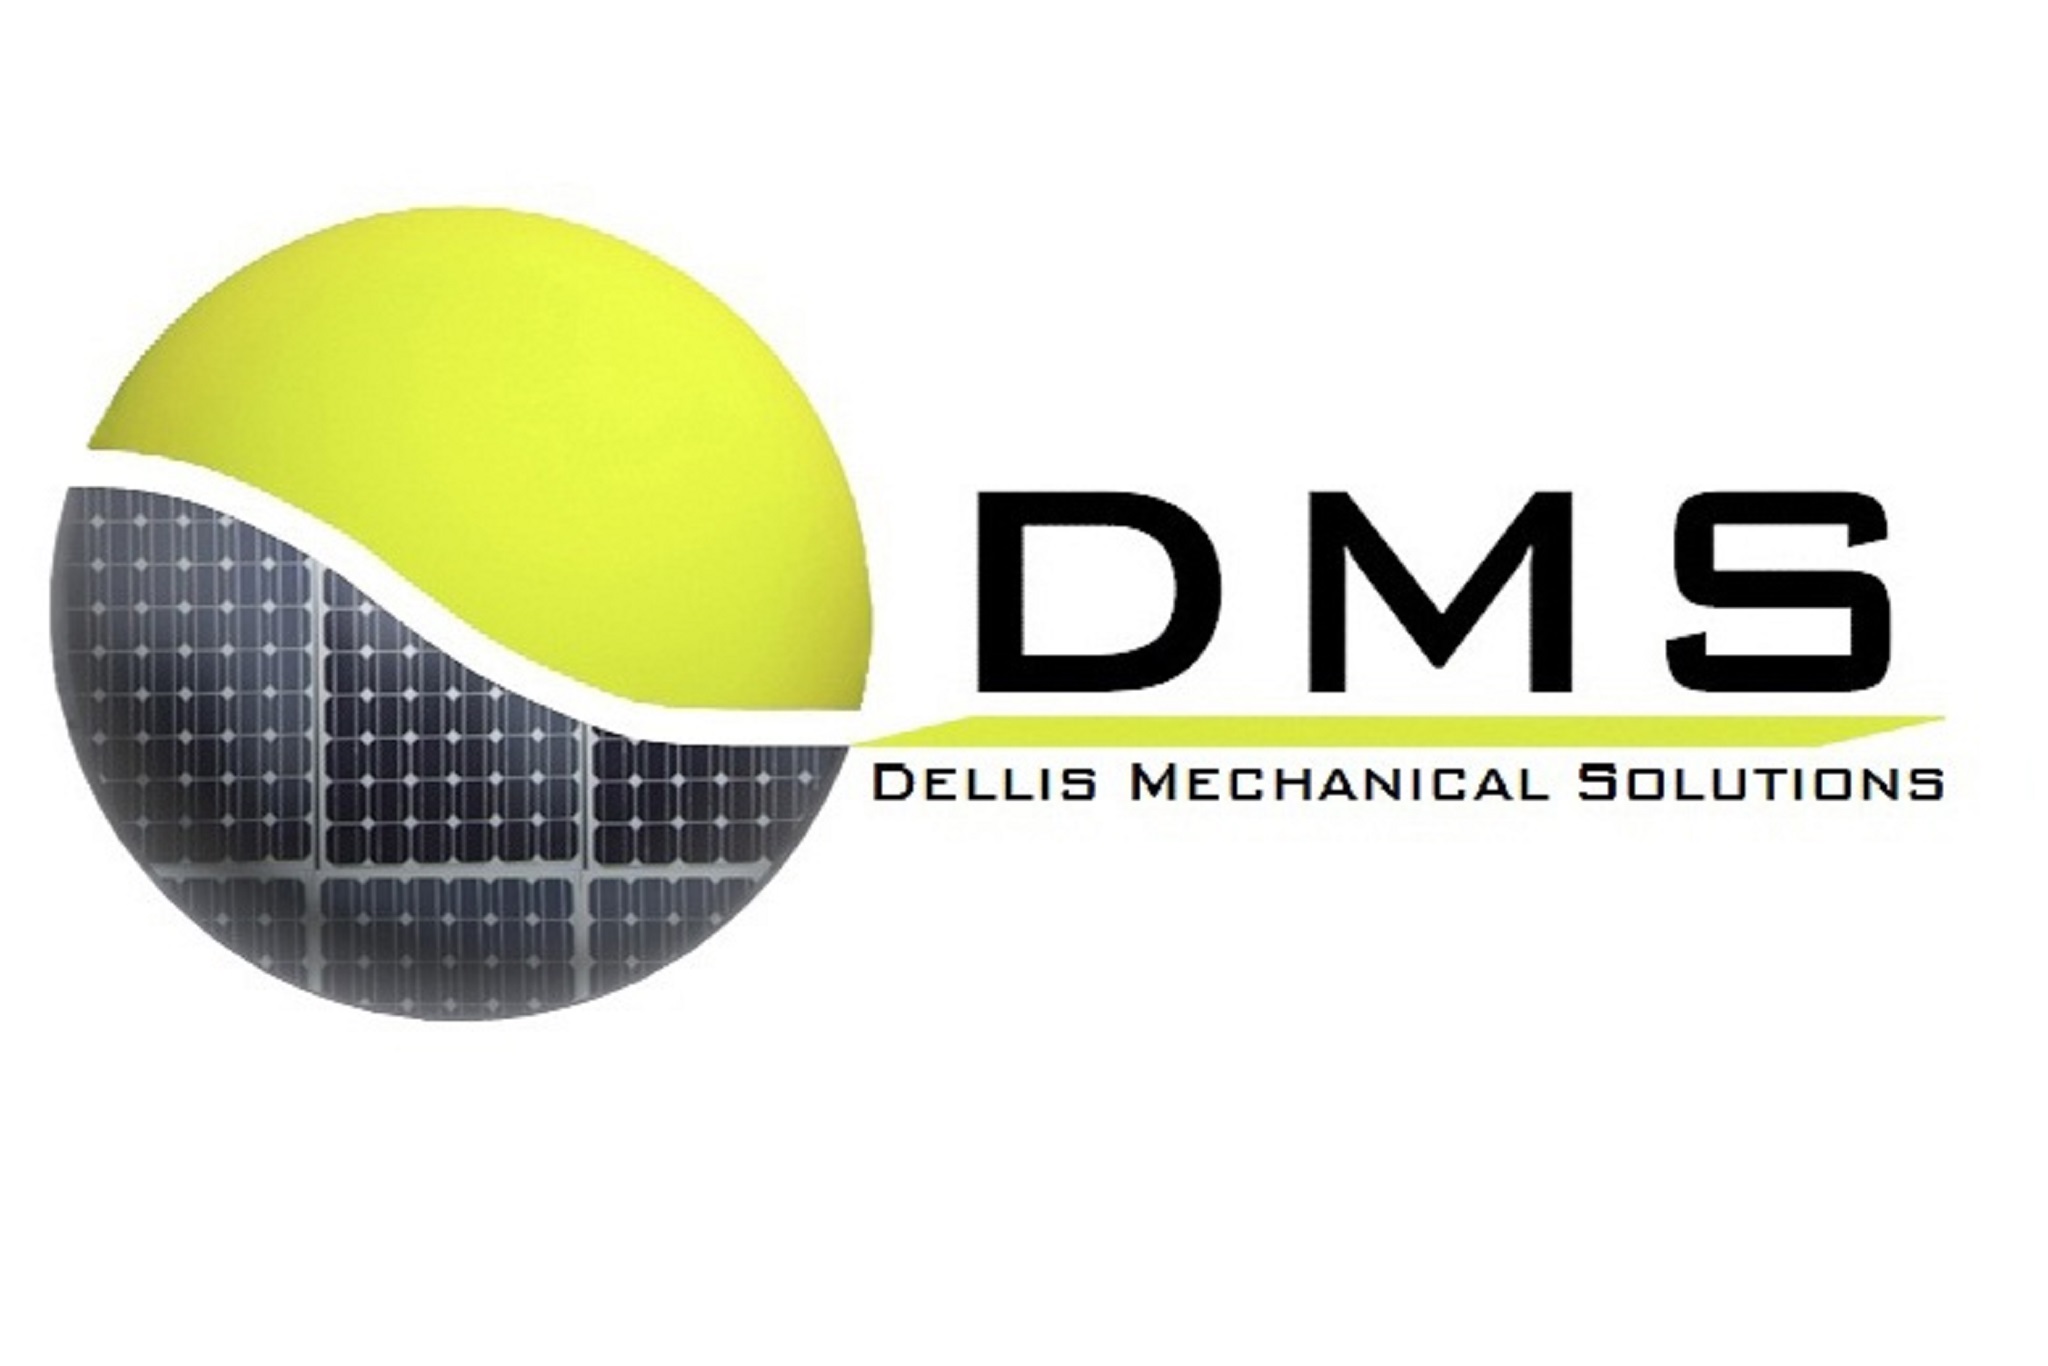 DMS - Dellis Mechanical Solutions